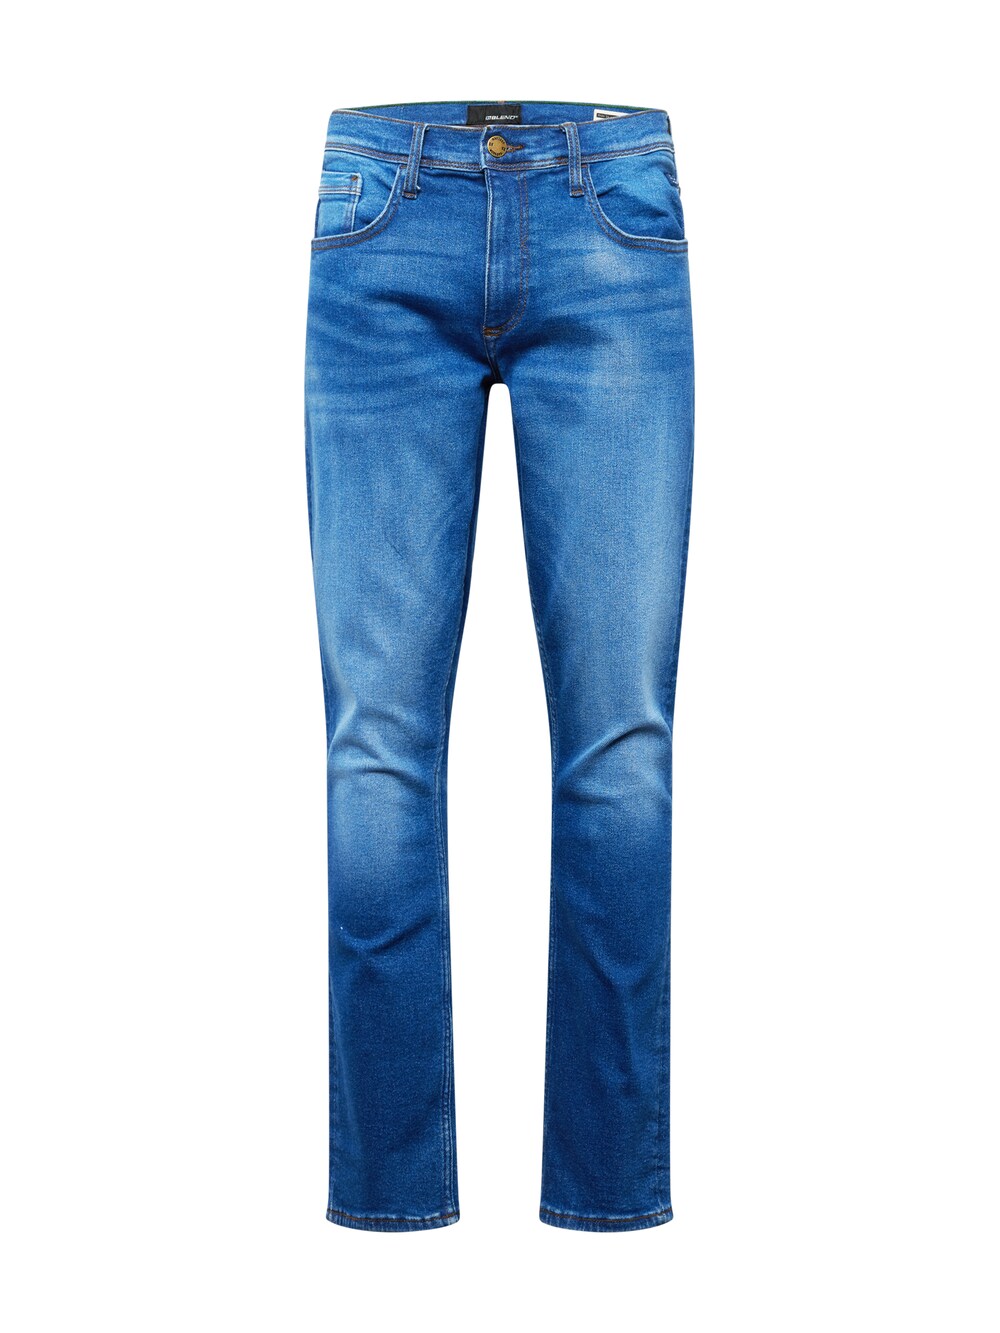 Обычные джинсы BLEND Blizzard, синий